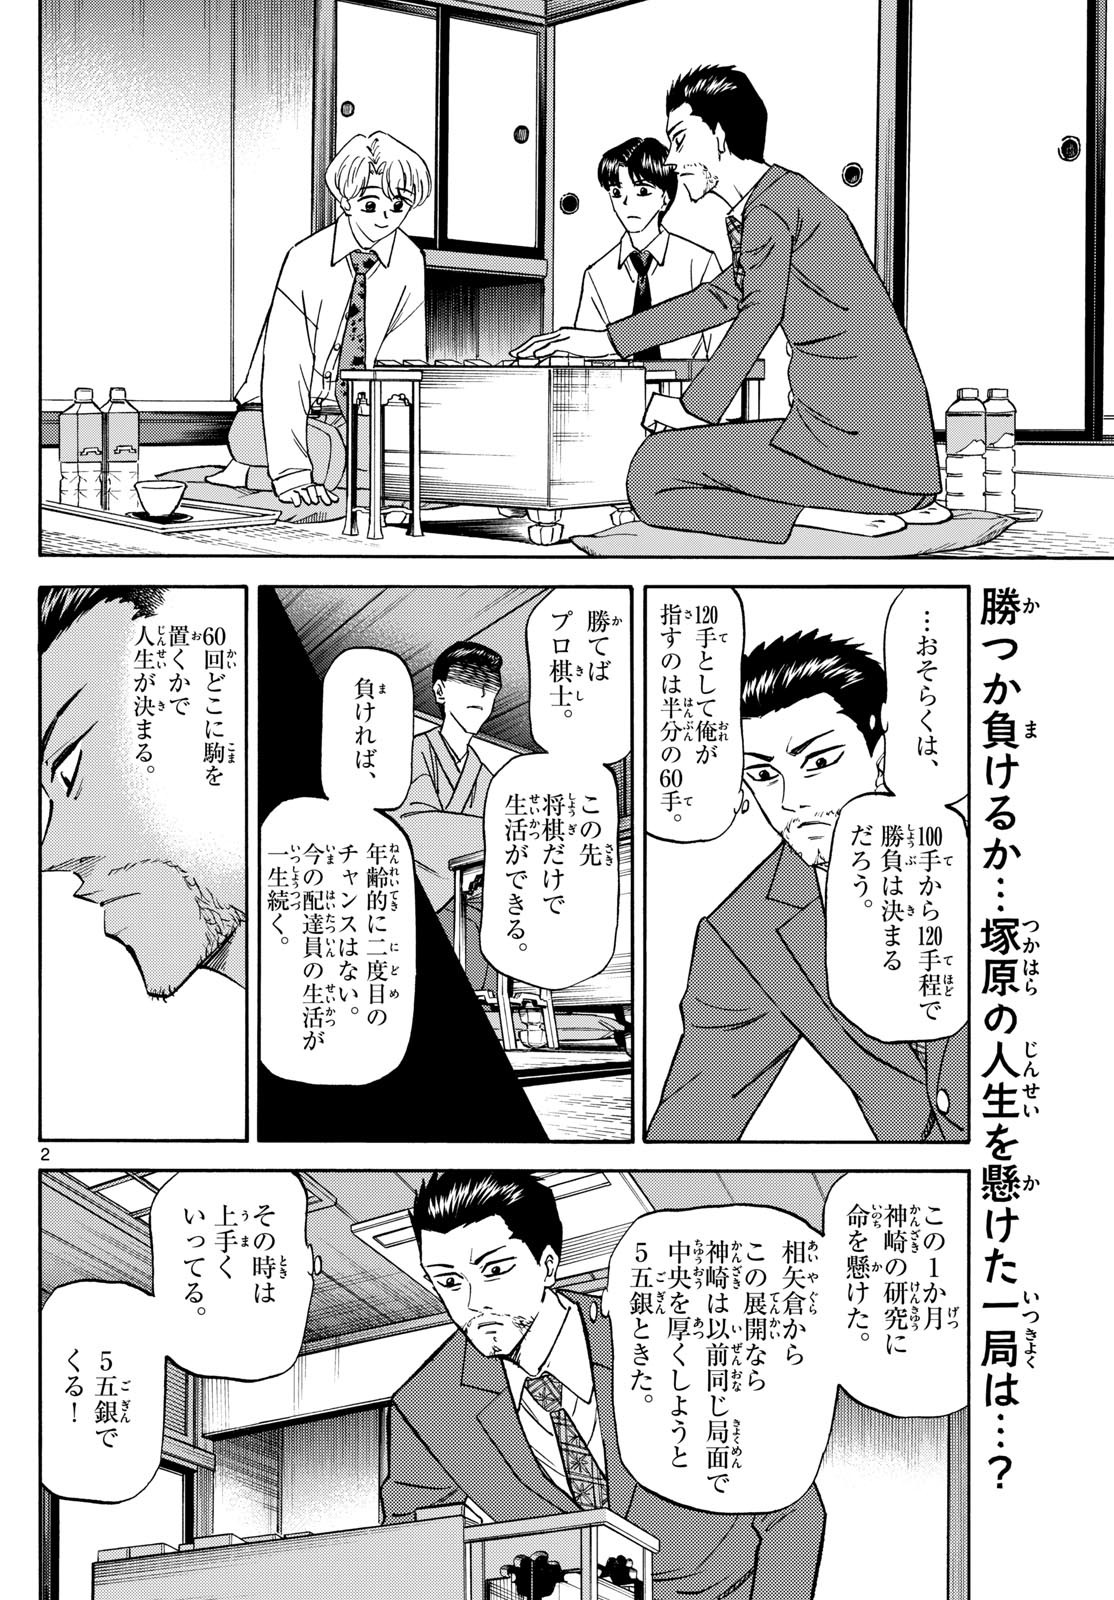 Ryu-to-Ichigo - Chapter 153 - Page 2